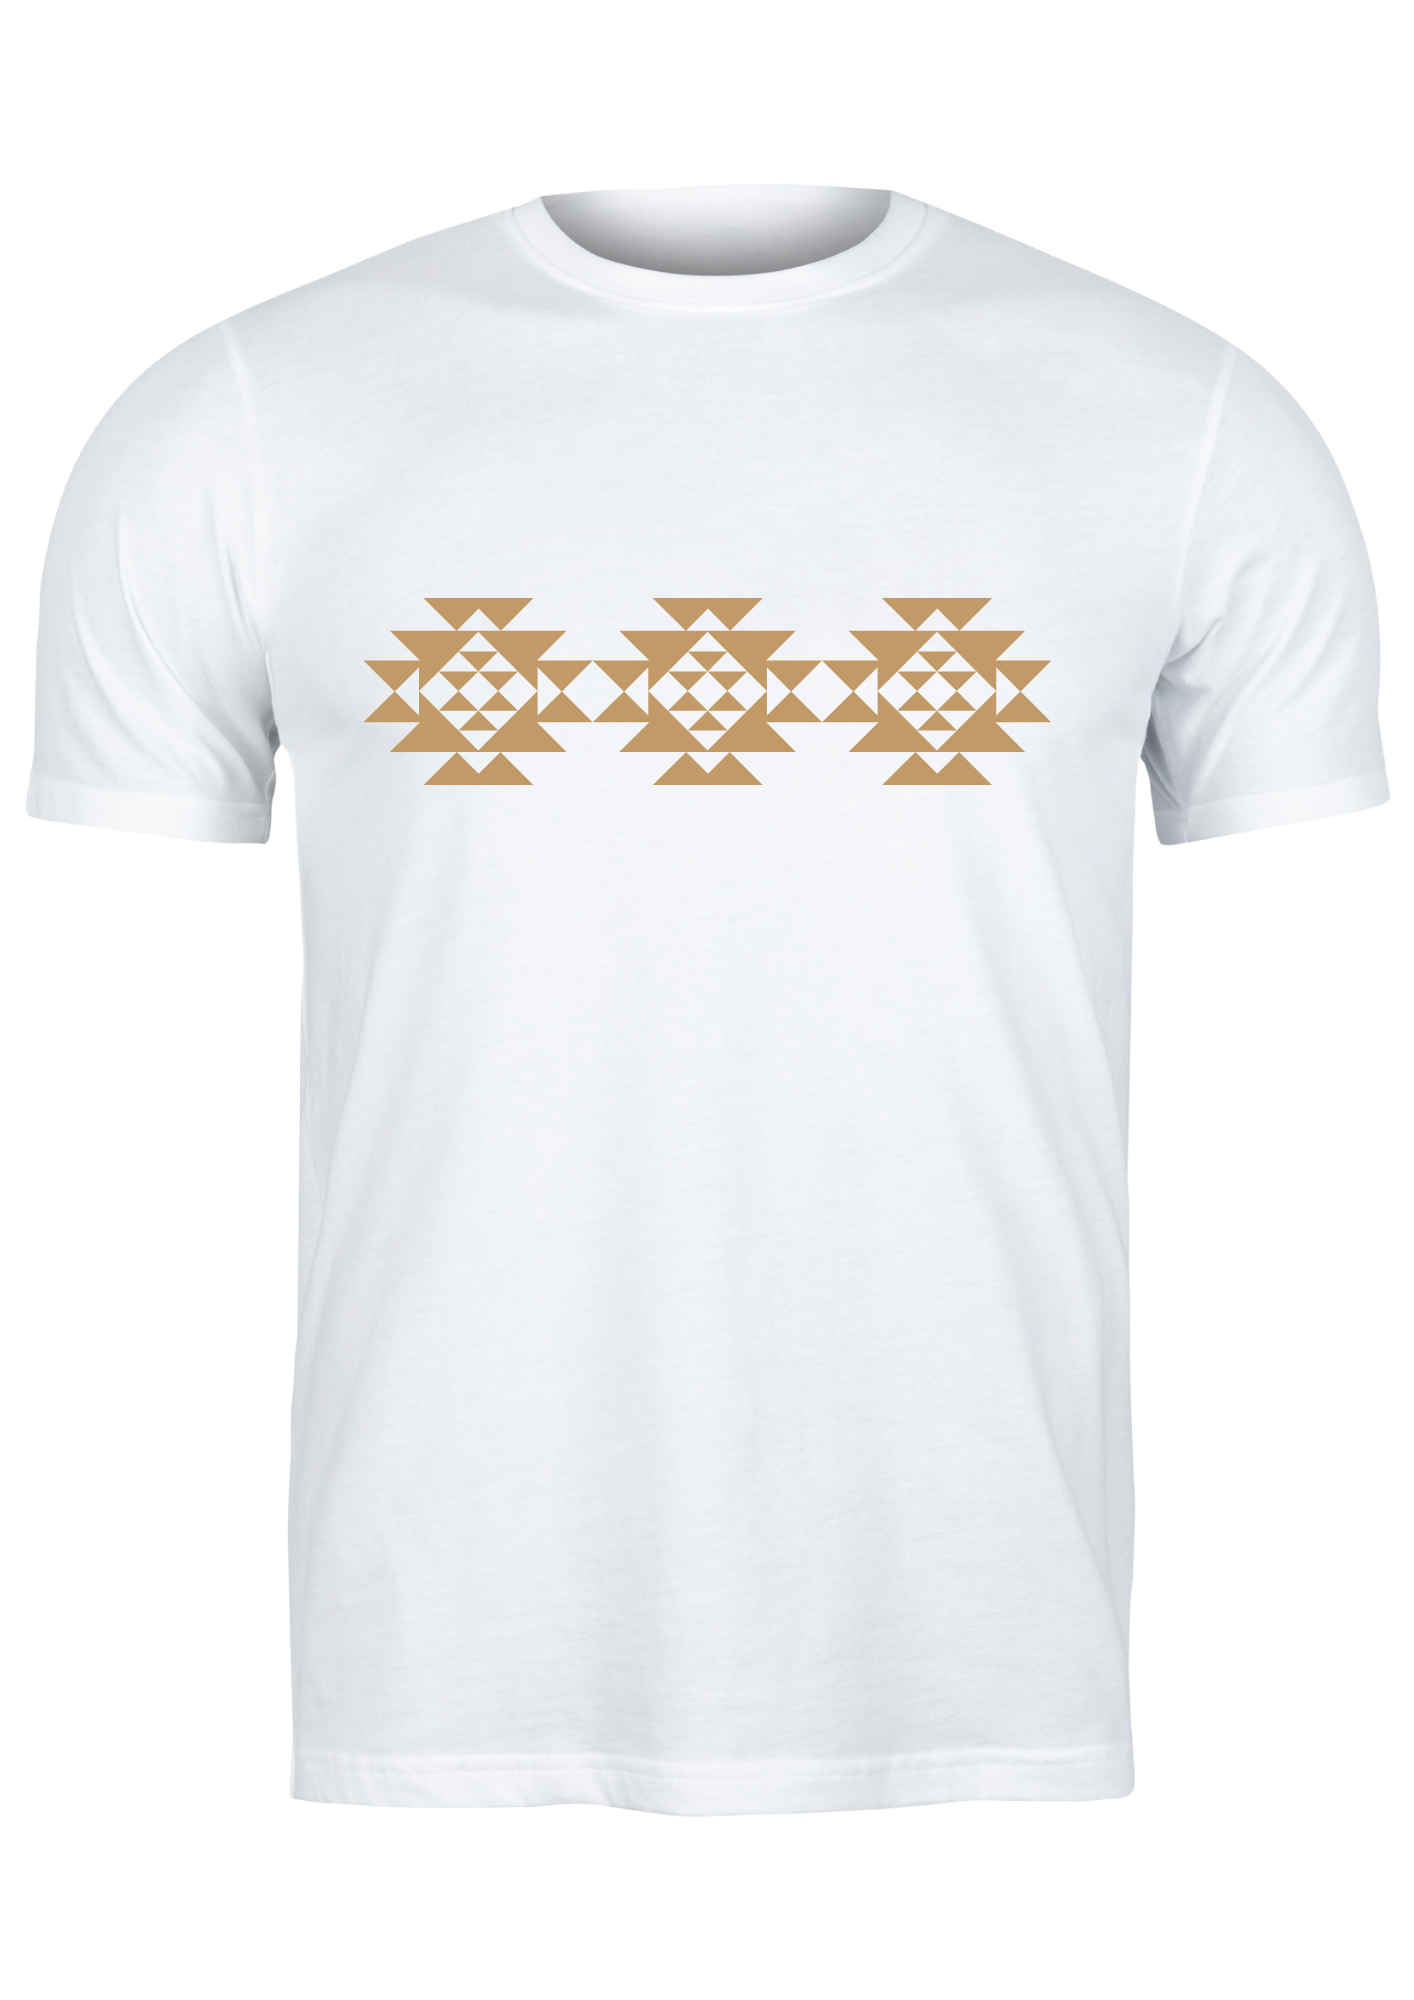 Unisex T Shirt Printed Anatolian Pattern